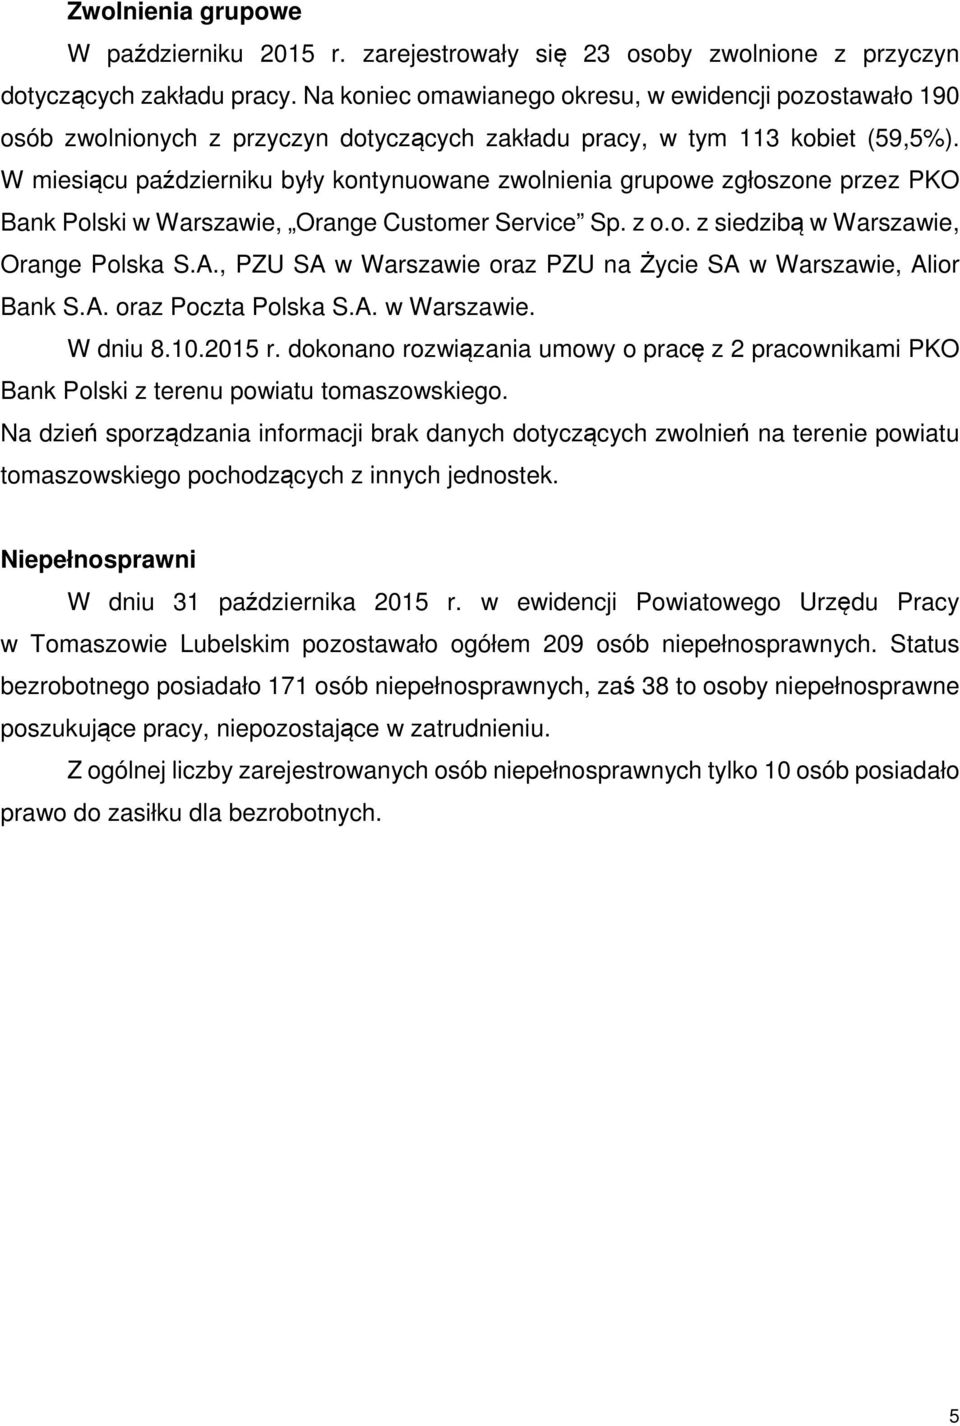 W miesiącu październiku były kontynuowane zwolnienia grupowe zgłoszone przez PKO Bank Polski w Warszawie, Orange Customer Service Sp. z o.o. z siedzibą w Warszawie, Orange Polska S.A.